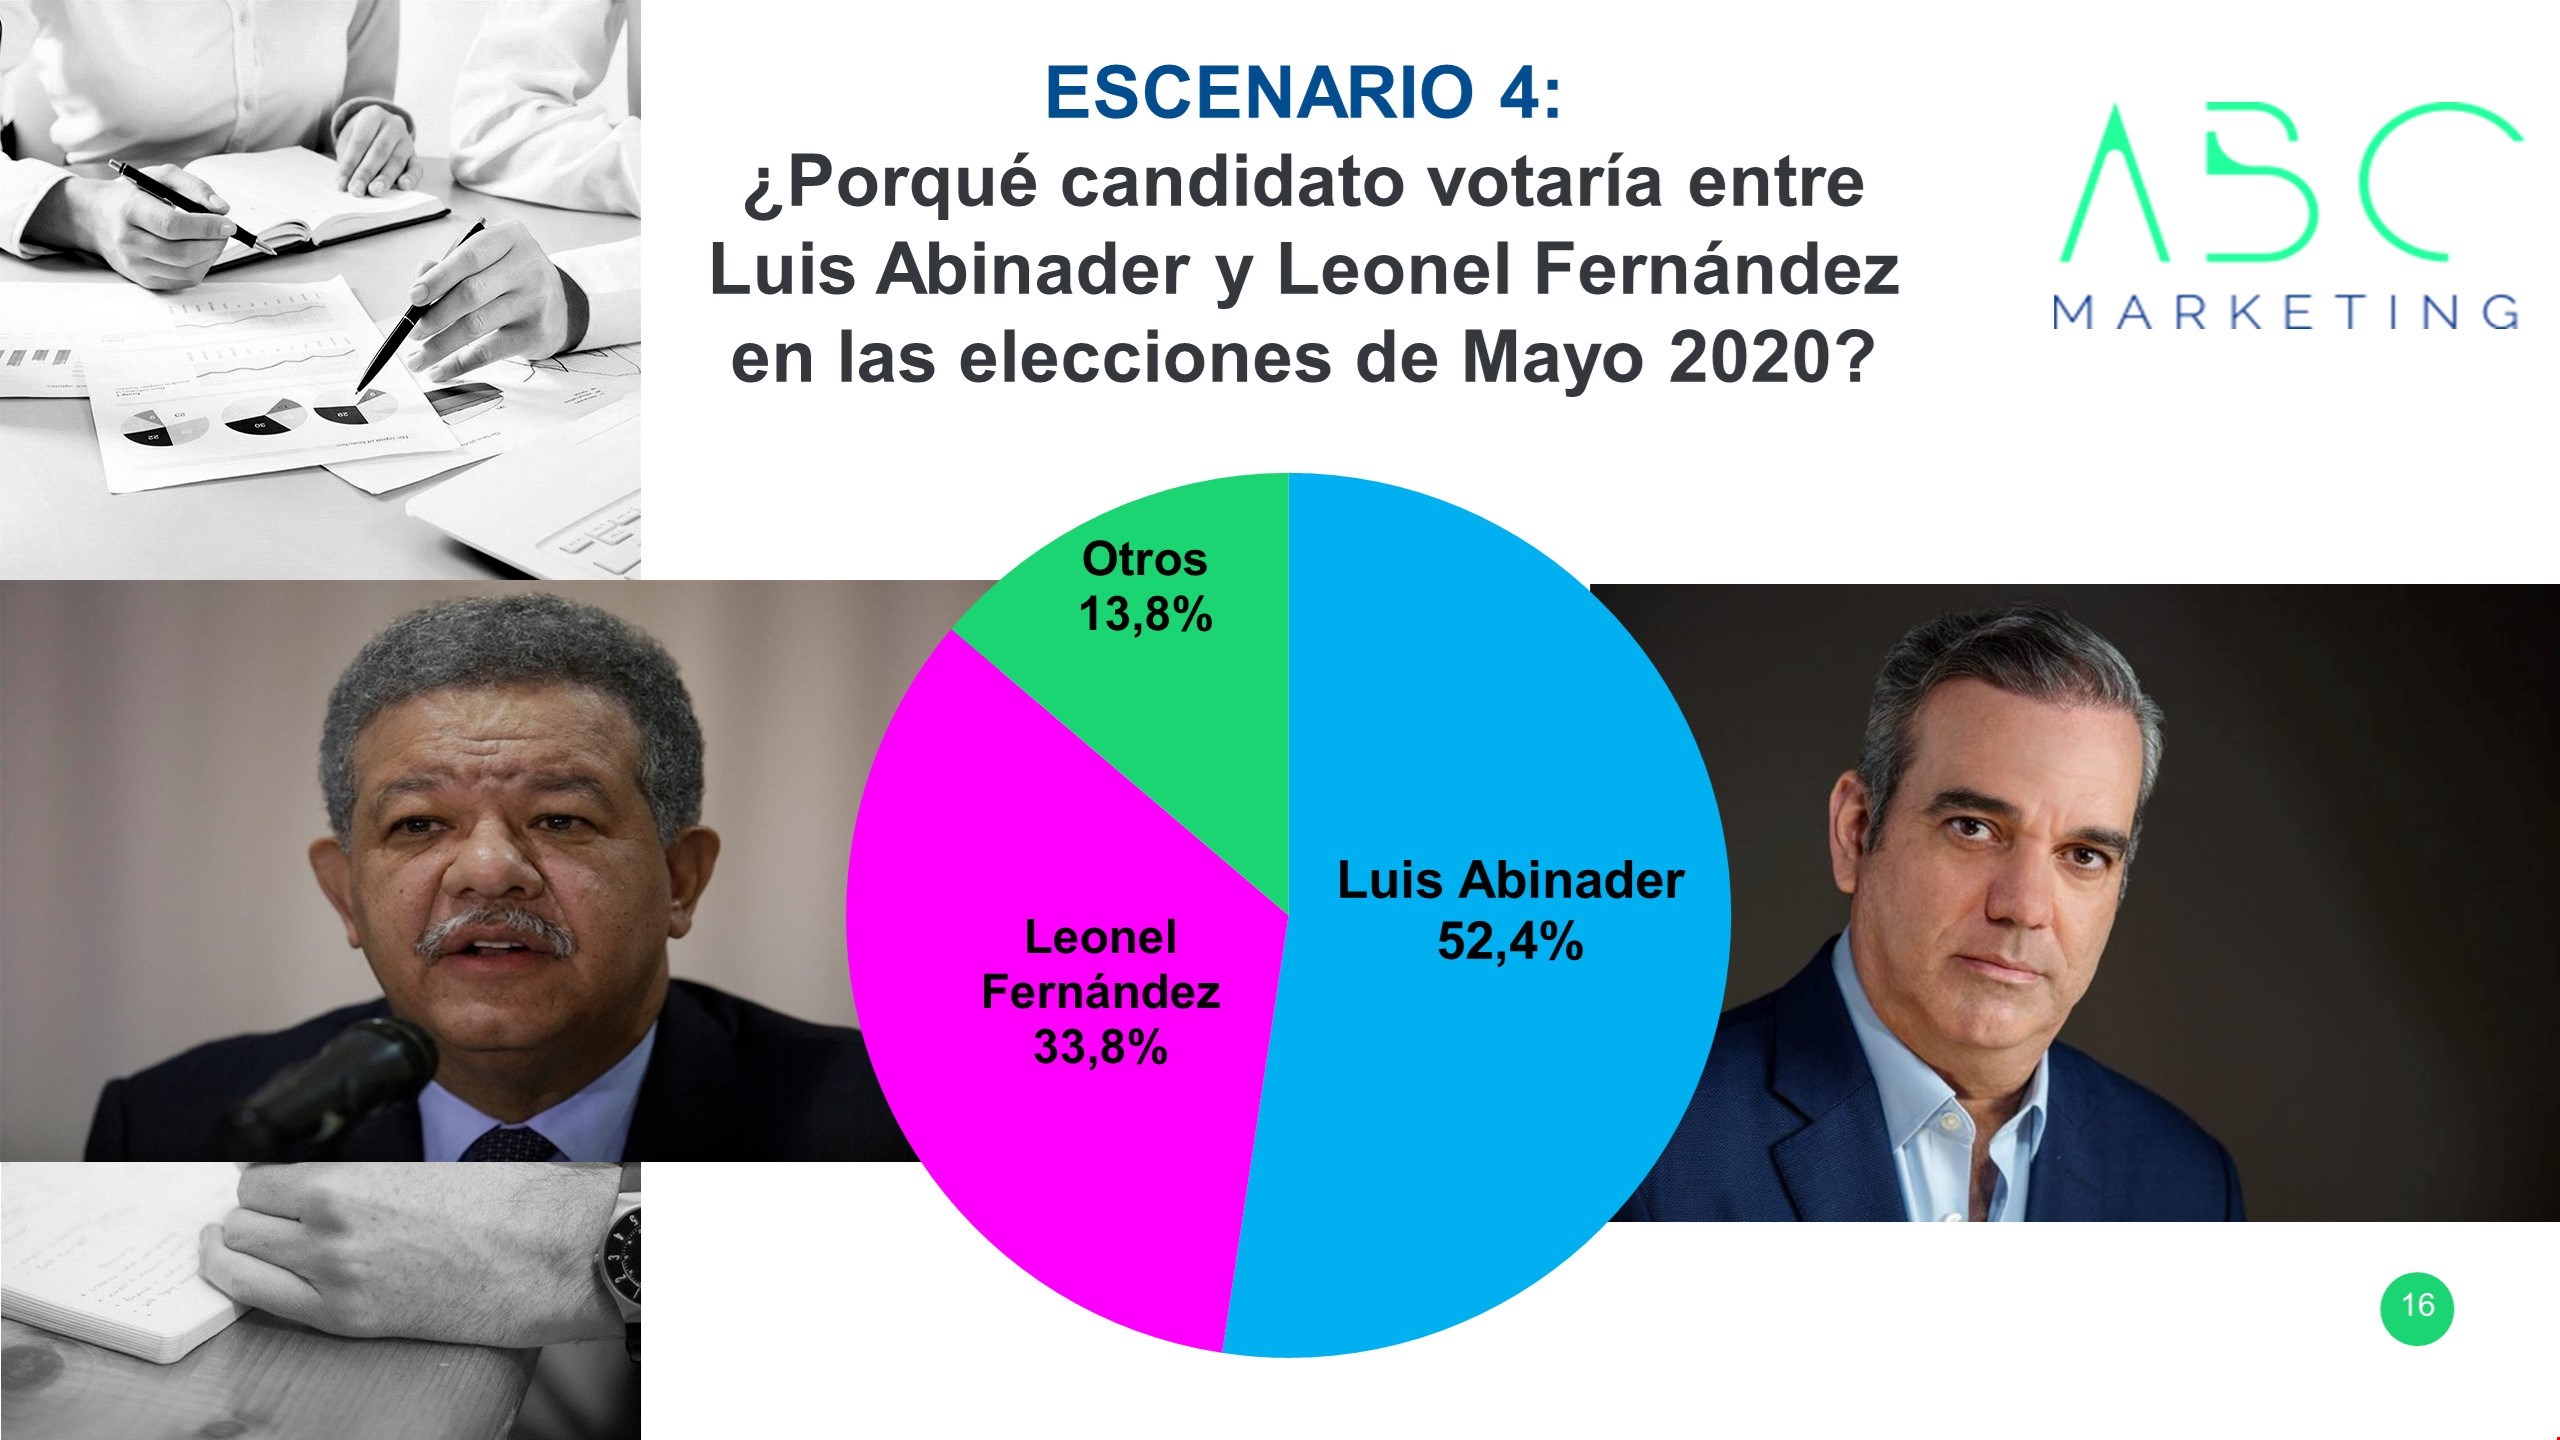 Luis Abinader ganaría elecciones con 52.4% frente a Leonel Fernández 33.8%, según encuesta de ABC Marketing